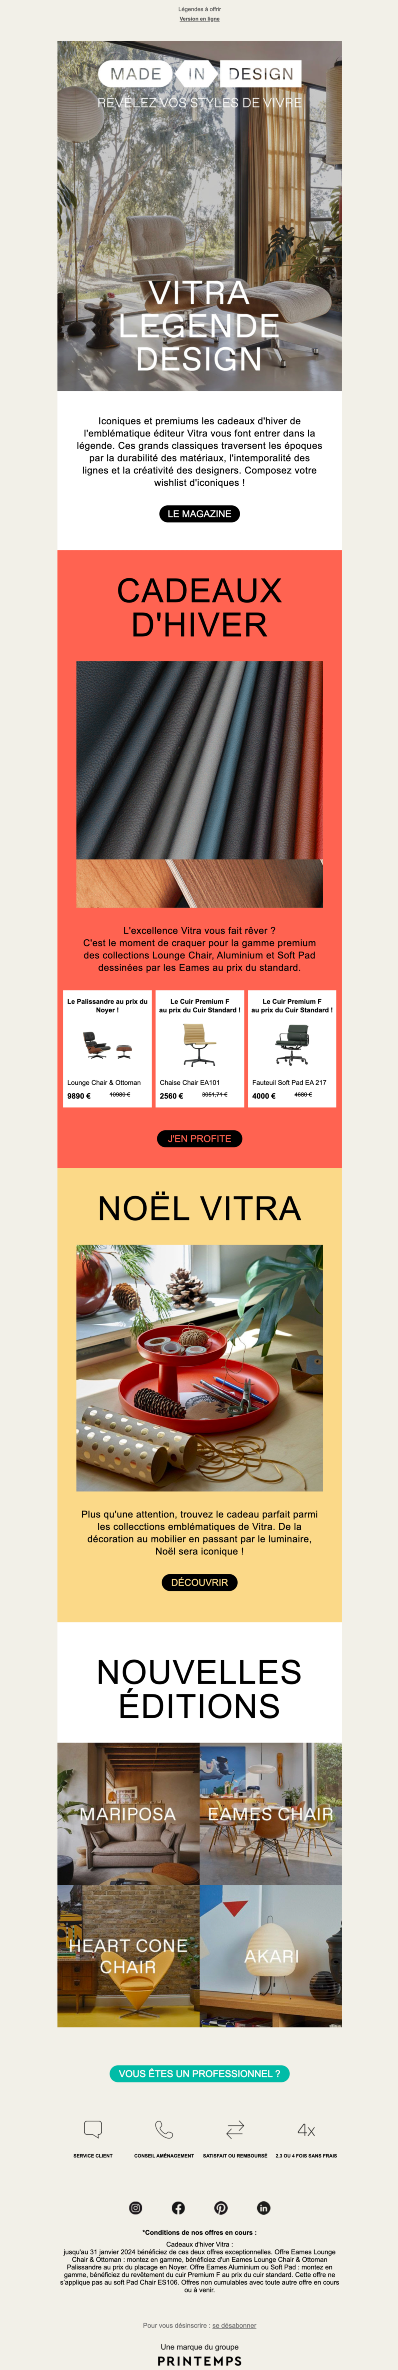 Exemple de newsletter de Made in Design